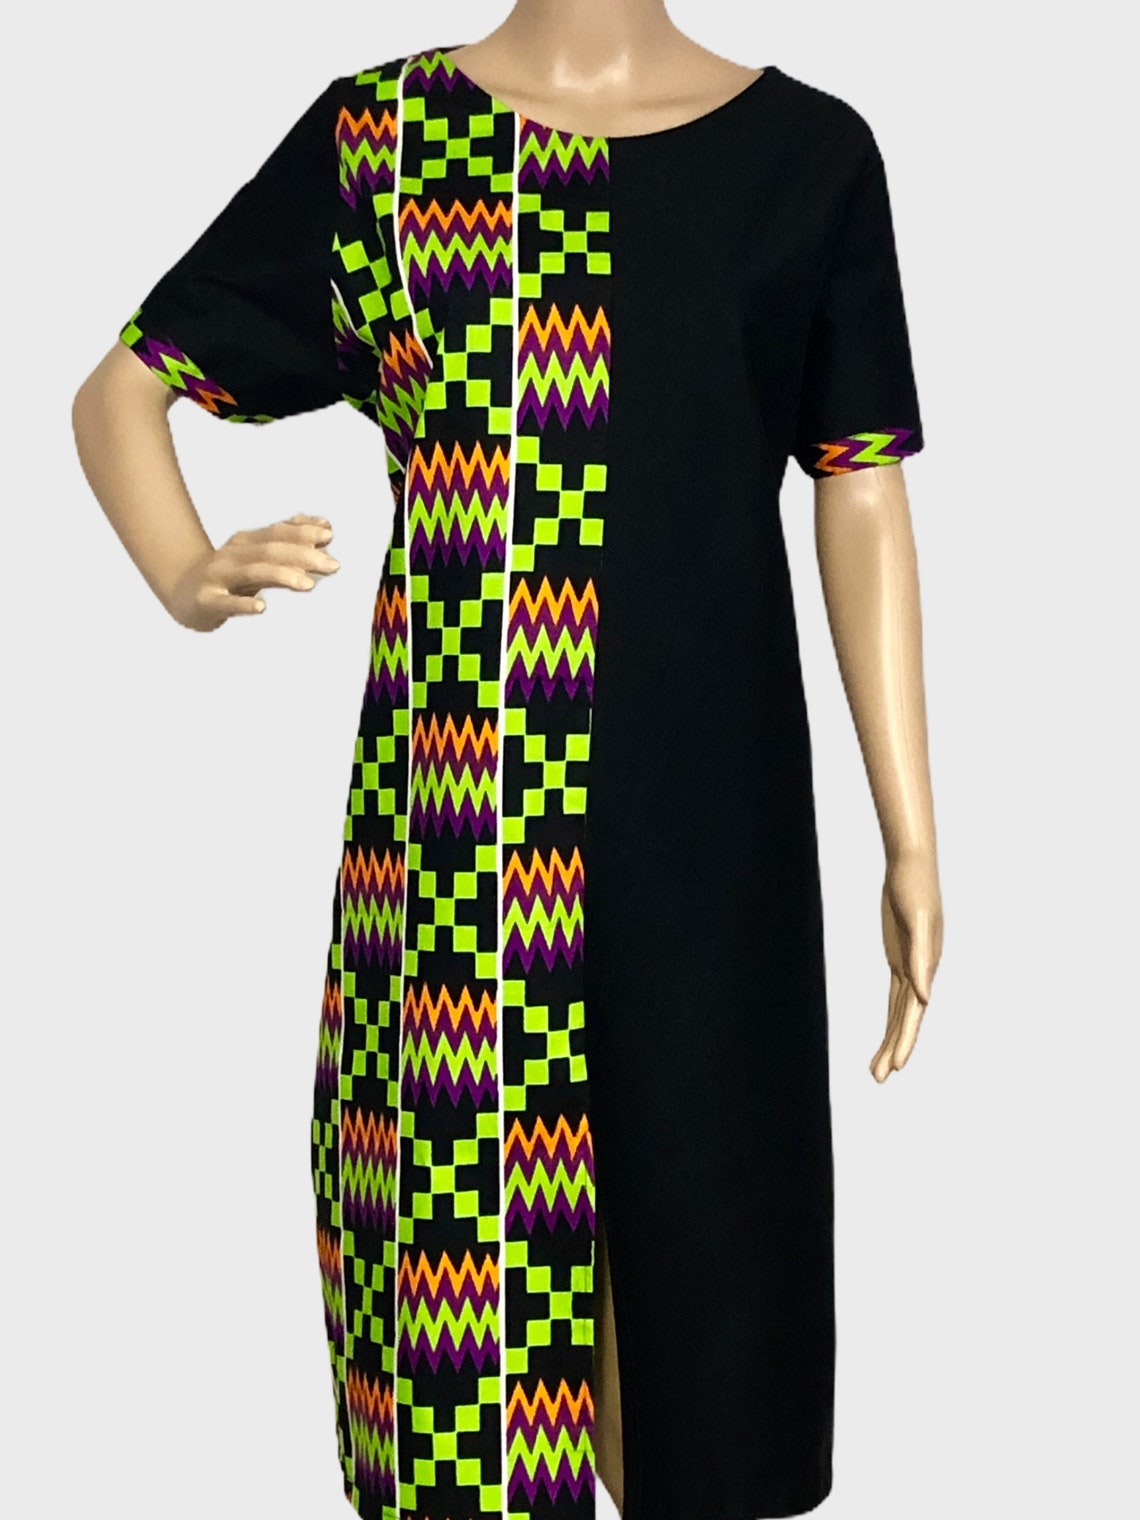 African Print Dress Kente Dress African Dress | Etsy